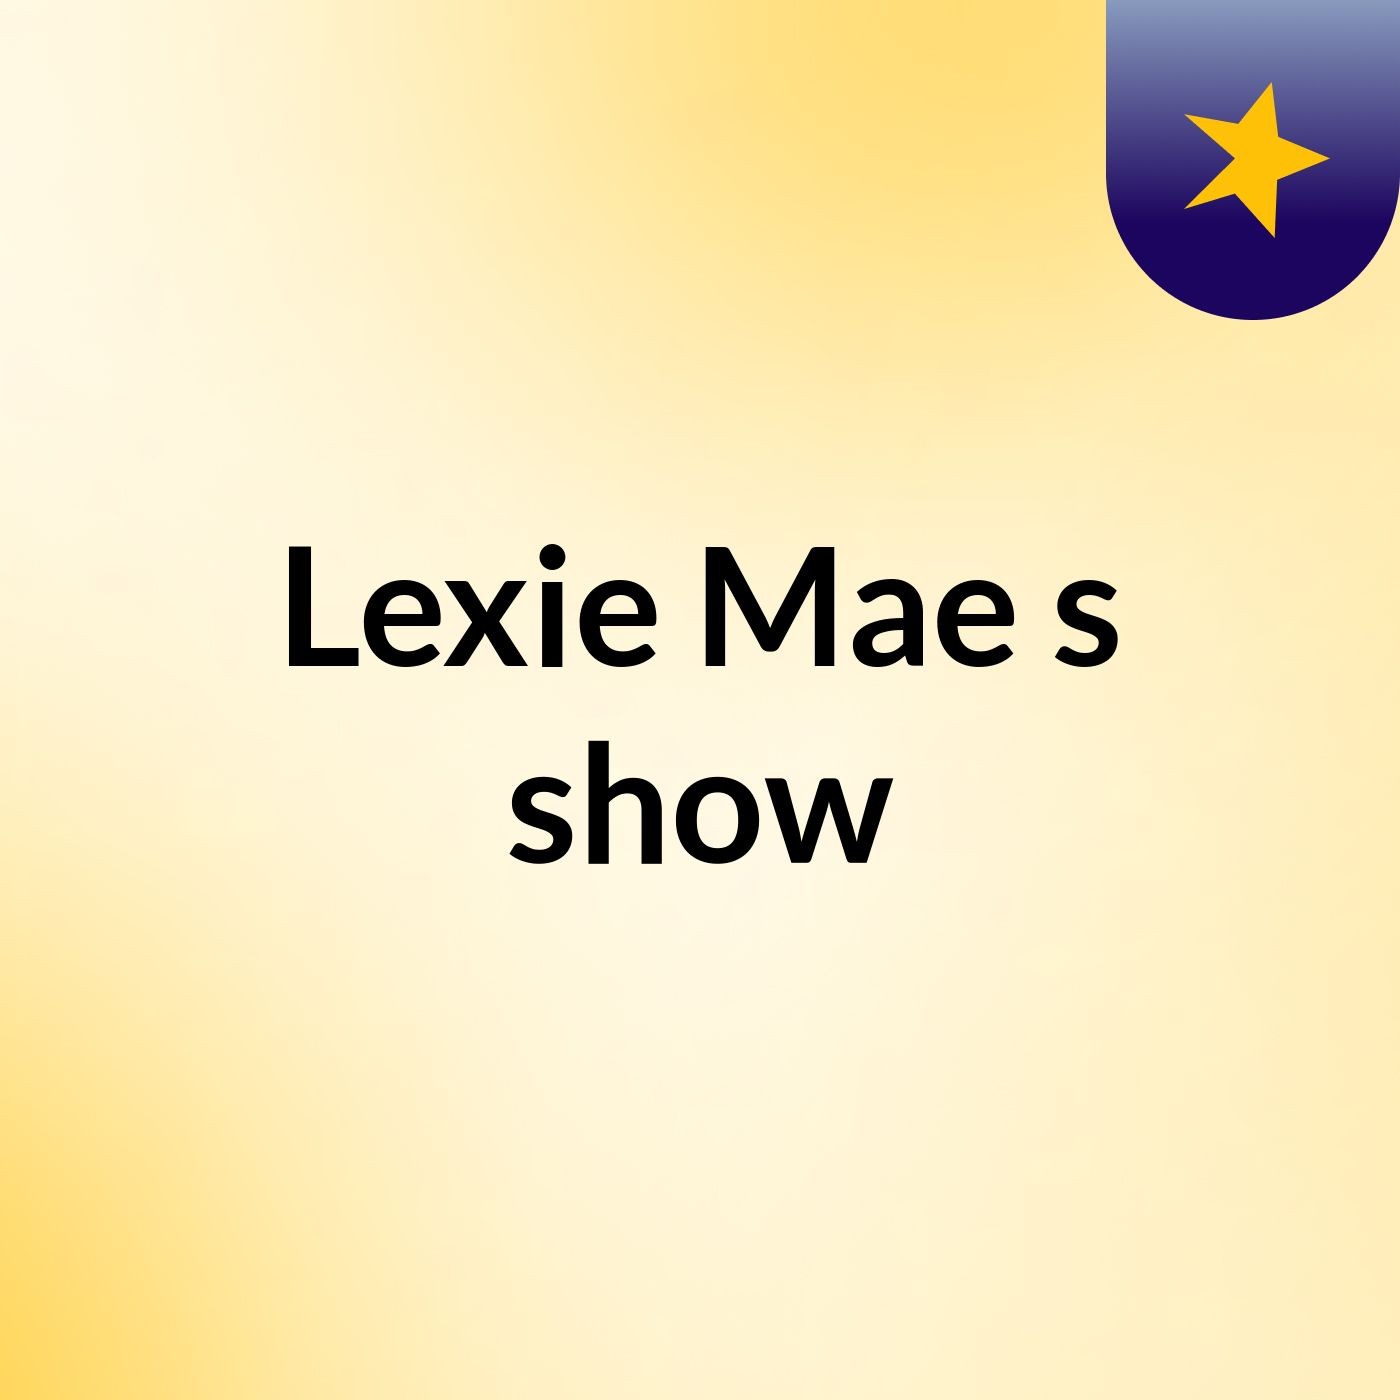 Lexie Mae's show